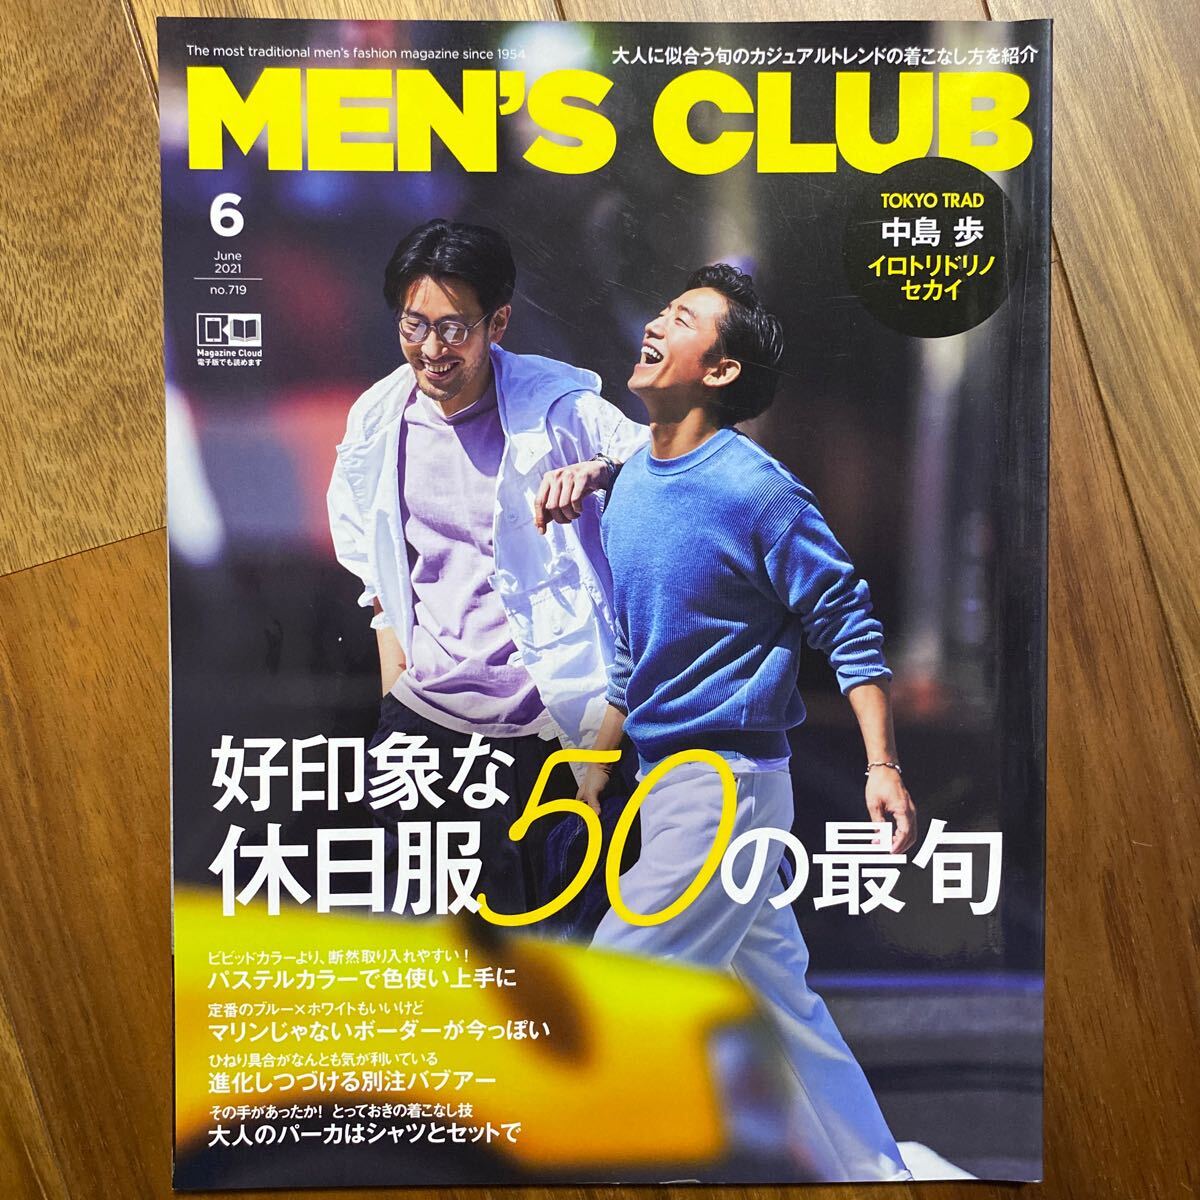 MEN*S CLUB( мужской Club ) 2021 год 6 месяц номер ( - - -тактный женщина .. фирма ) контрольный номер A1505